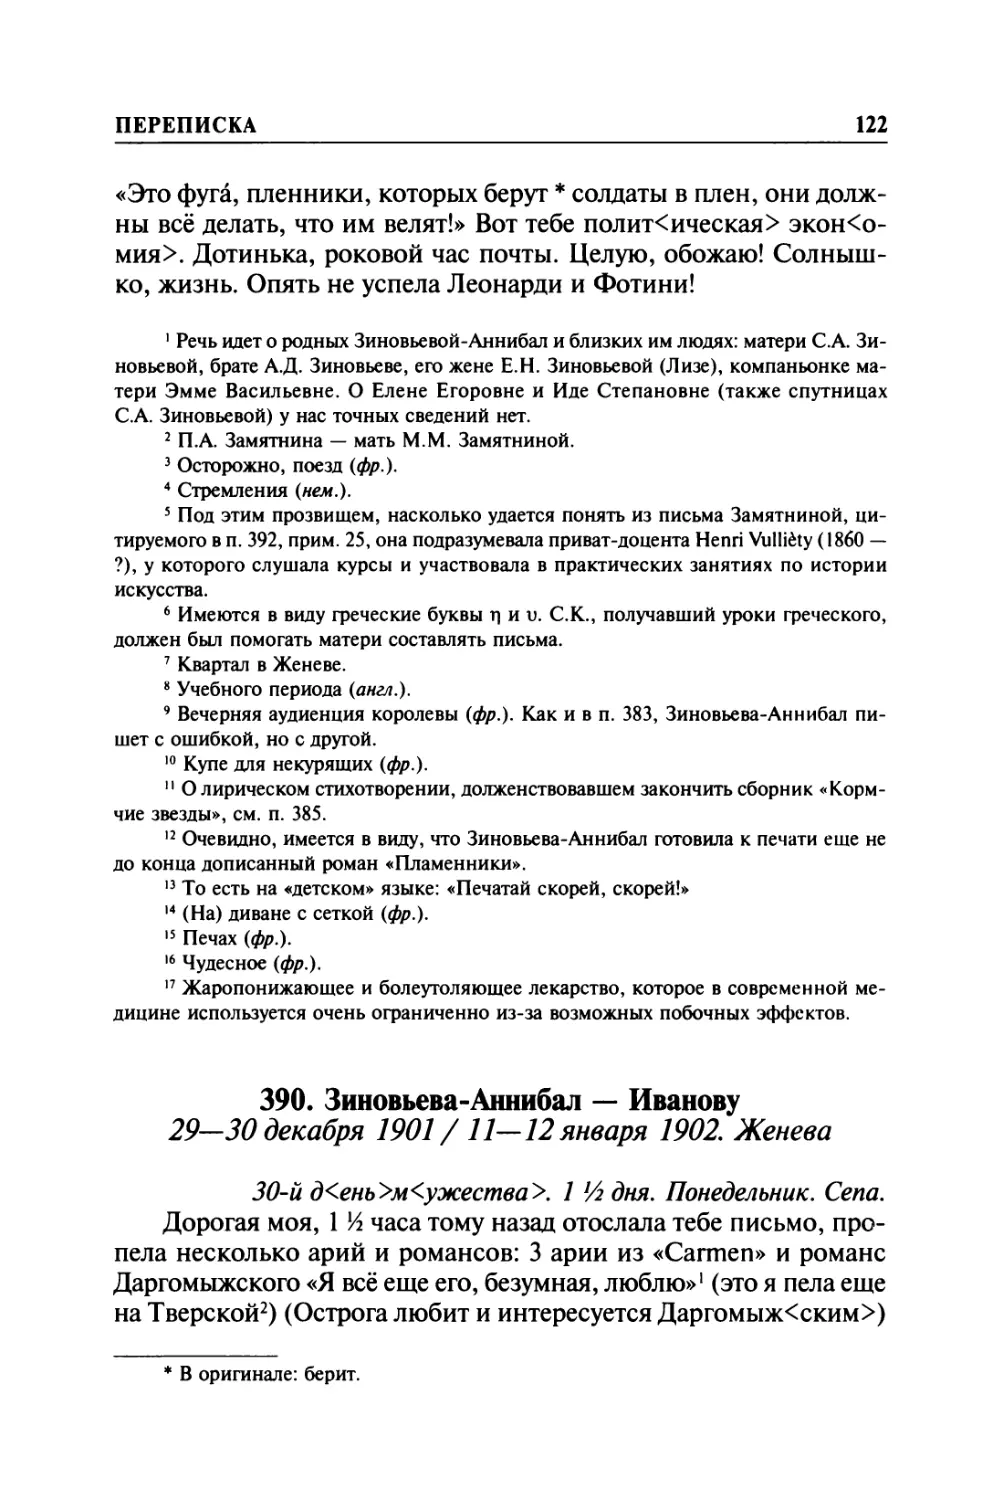 390. Зиновьева-Аннибал — Иванову. 29—30 декабря 1901 / 11—12 января 1902. Женева